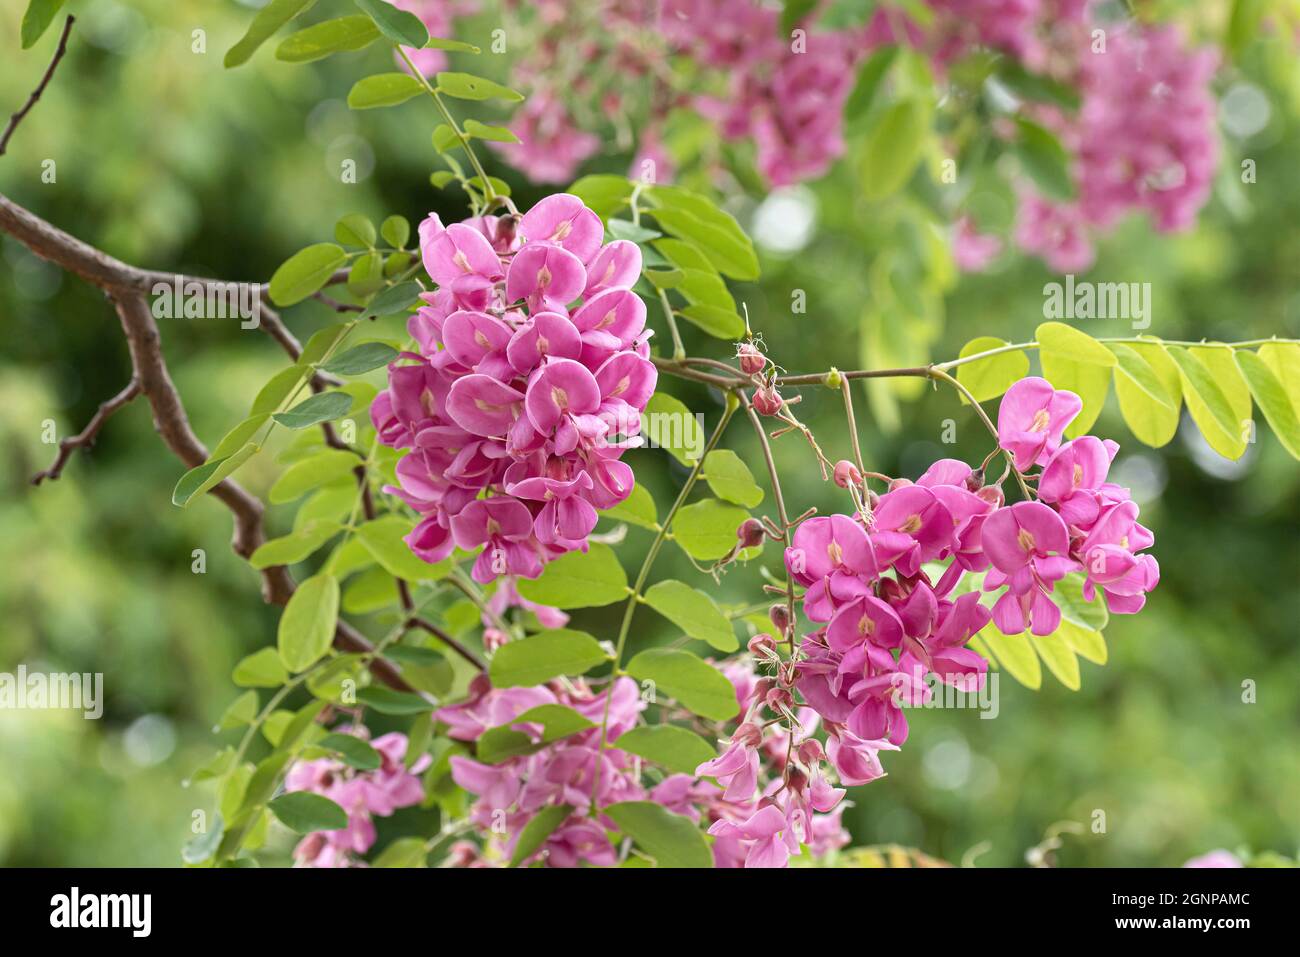 Robinie (Robinia x margaretta 'Casque Rouge', Robinia x margaretta Casque Rouge), floreciendo, cultivar Casque Rouge Foto de stock